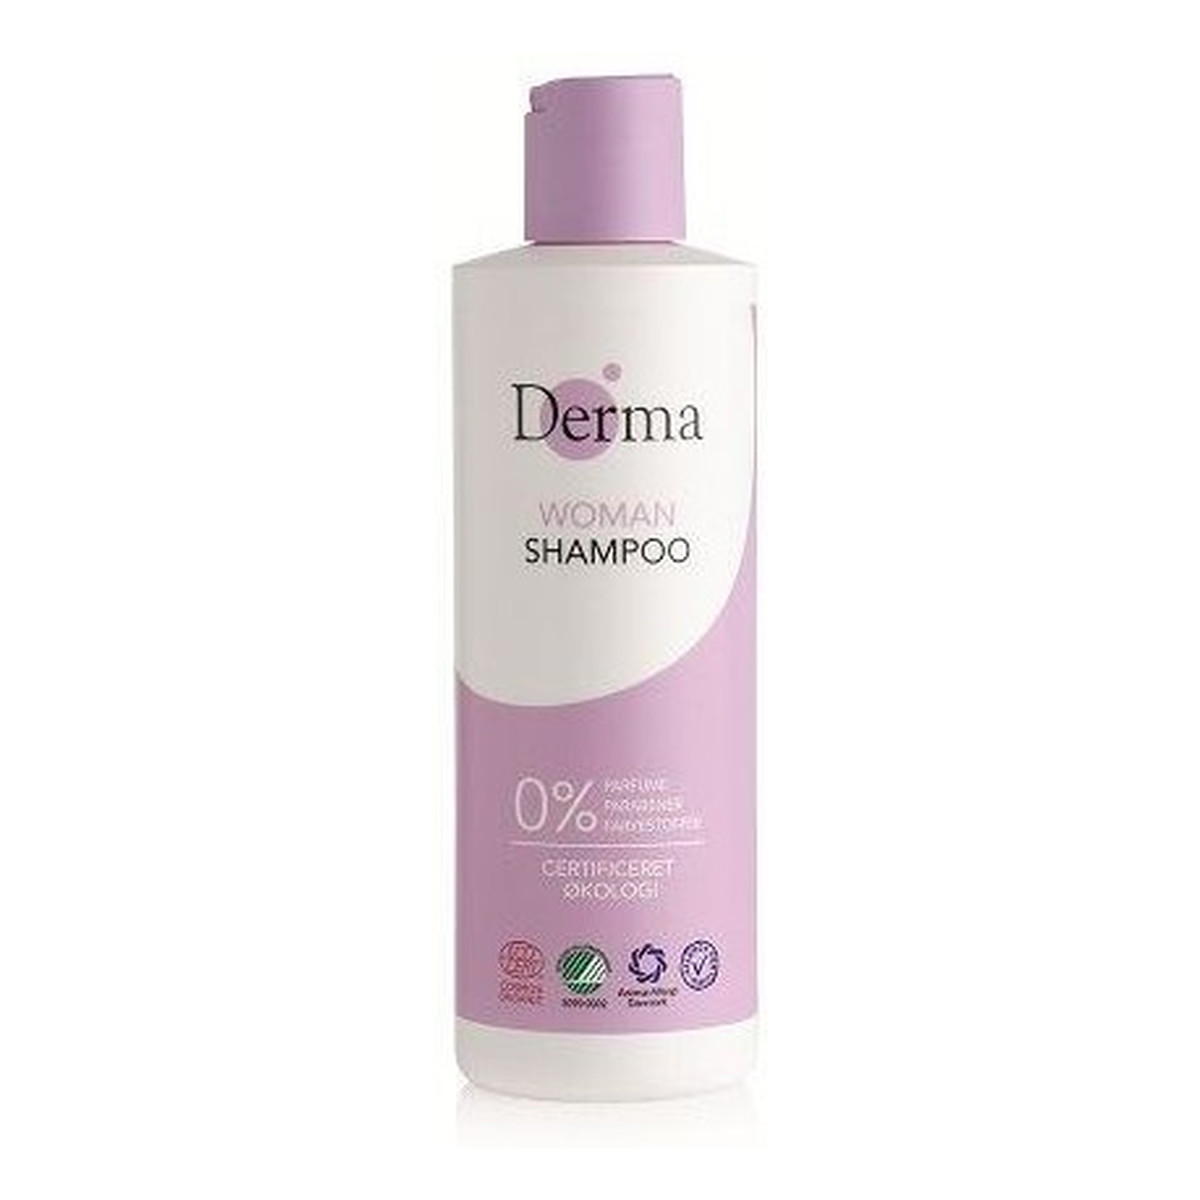 Derma Eco szampon do włosów 250ml